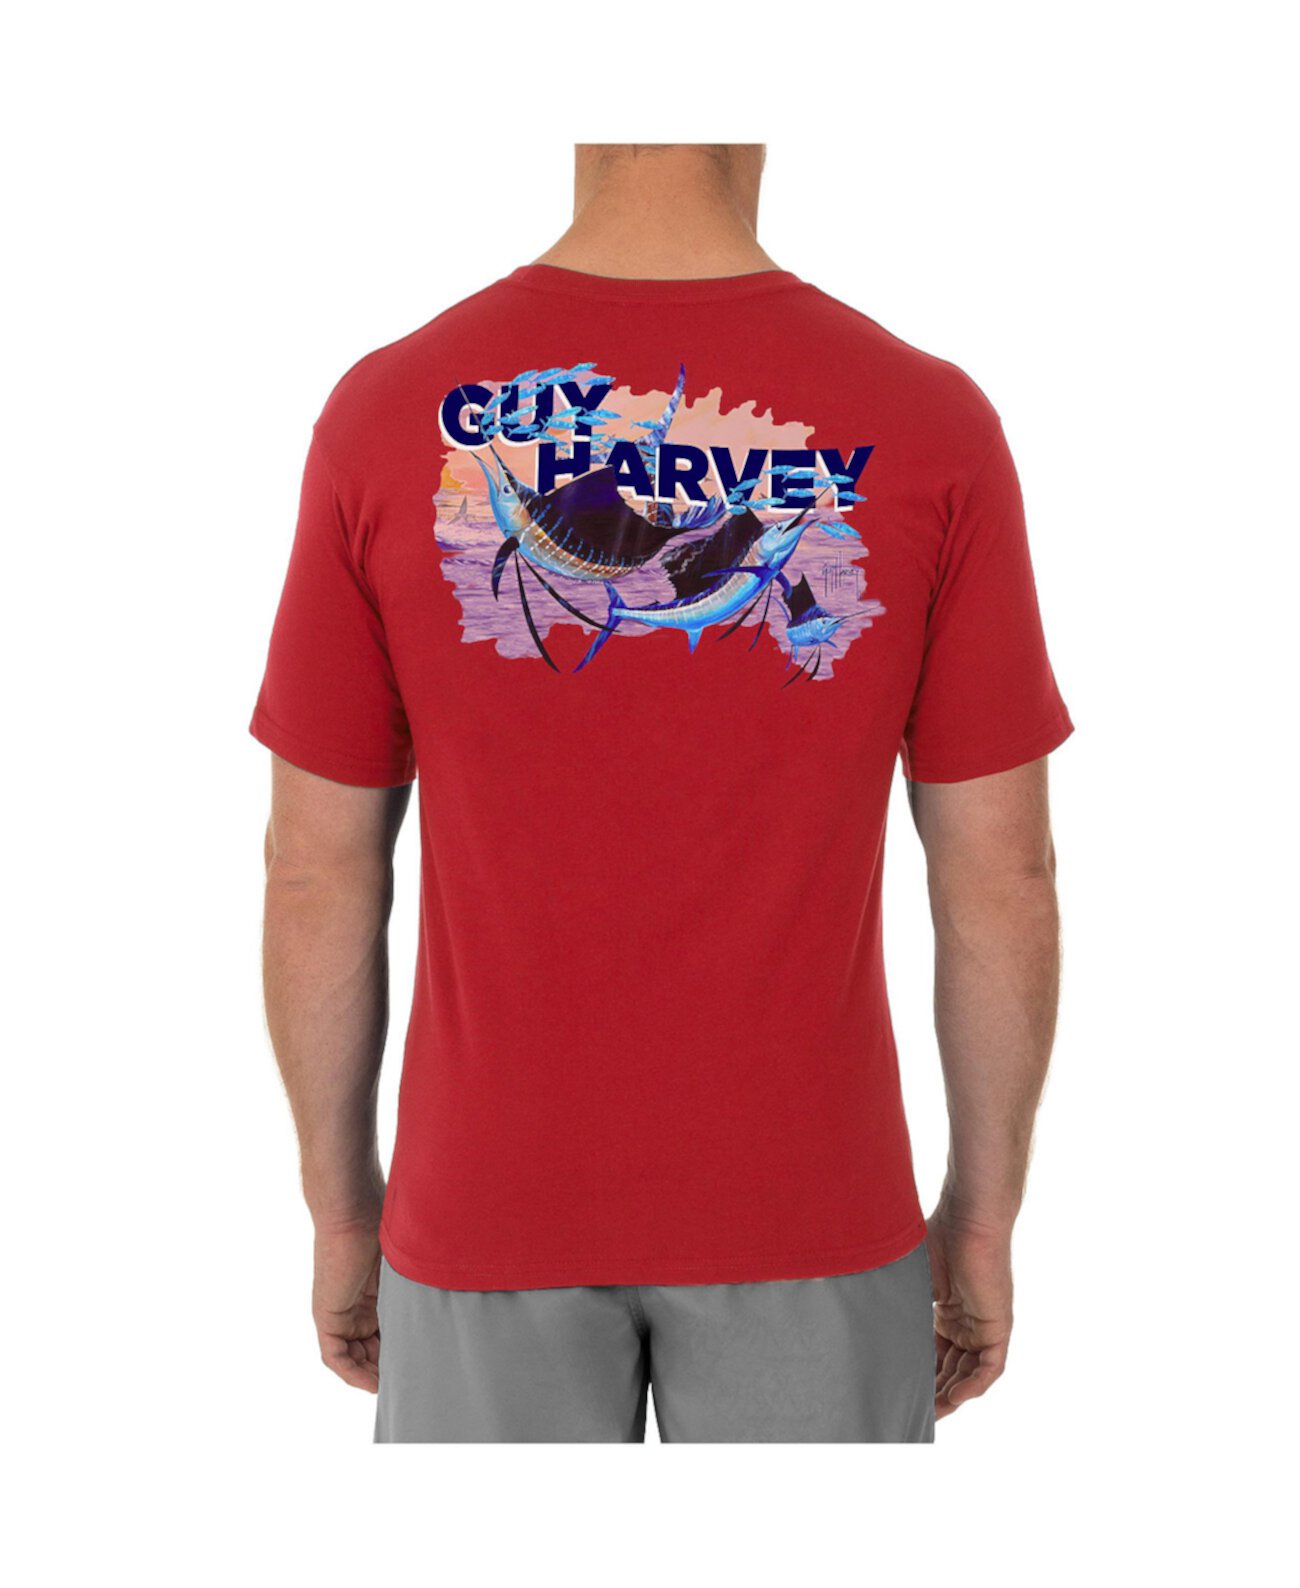 Мужская футболка с круглым вырезом и короткими рукавами Offshore Sailfish Guy Harvey